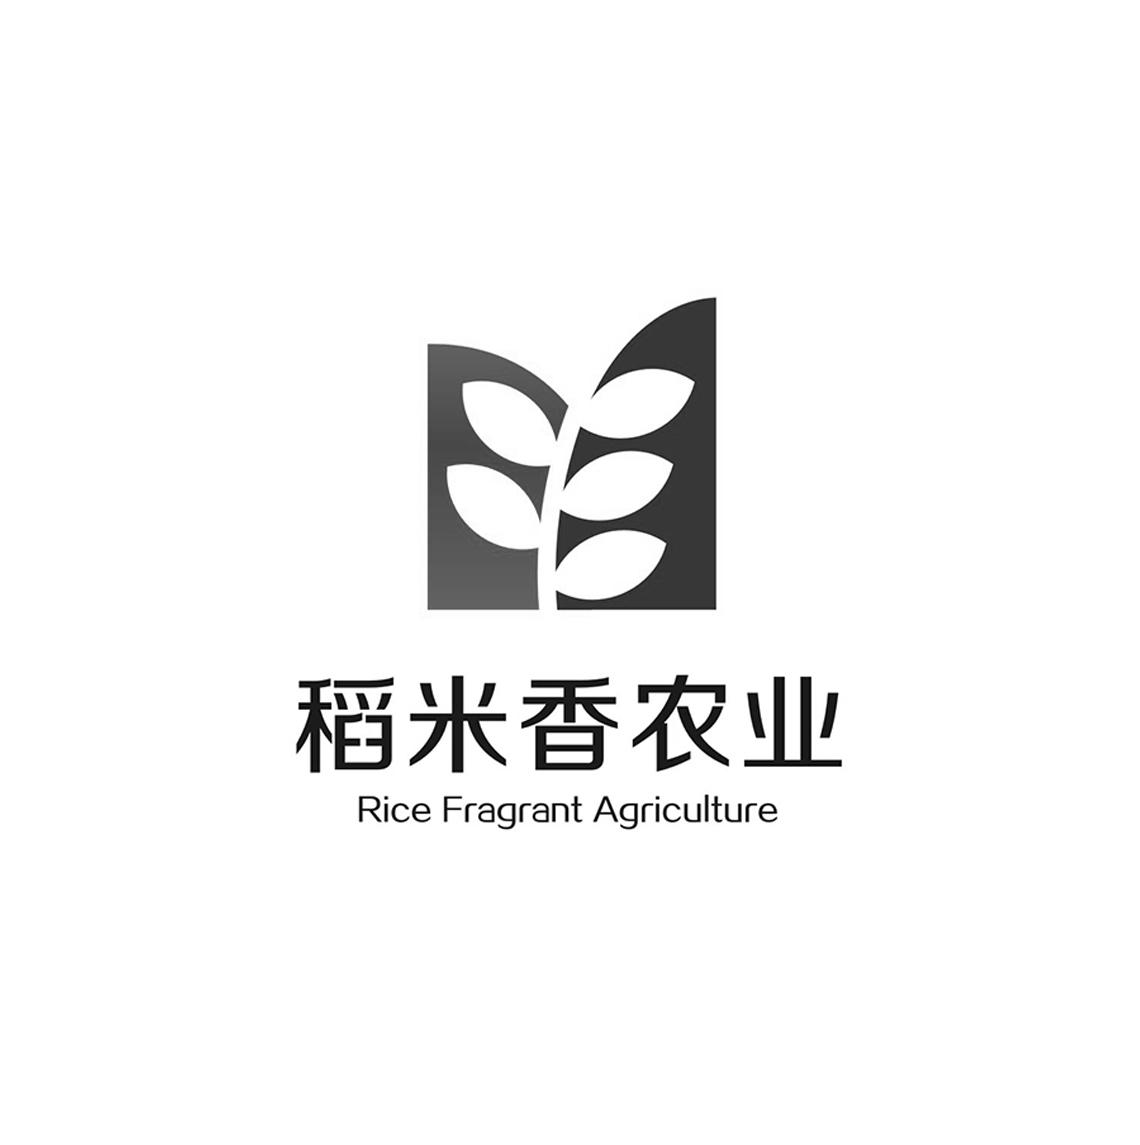 稻米香农业 rice fragrant agriculture